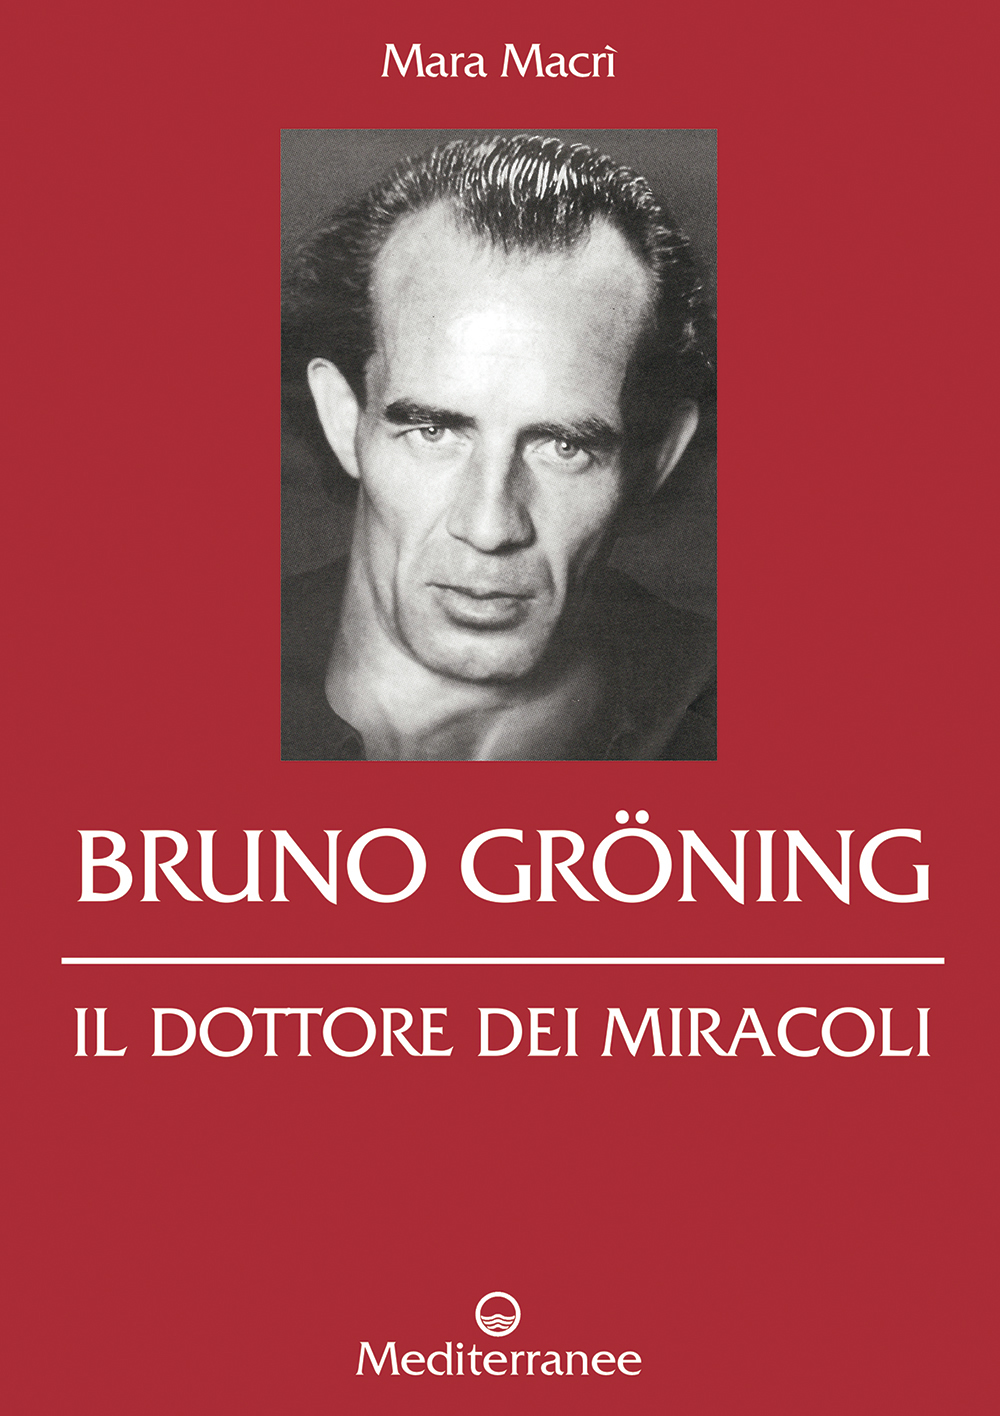 Libri Mara Macrì - Bruno Groning. Il Dottore Dei Miracoli NUOVO SIGILLATO, EDIZIONE DEL 24/06/2015 SUBITO DISPONIBILE